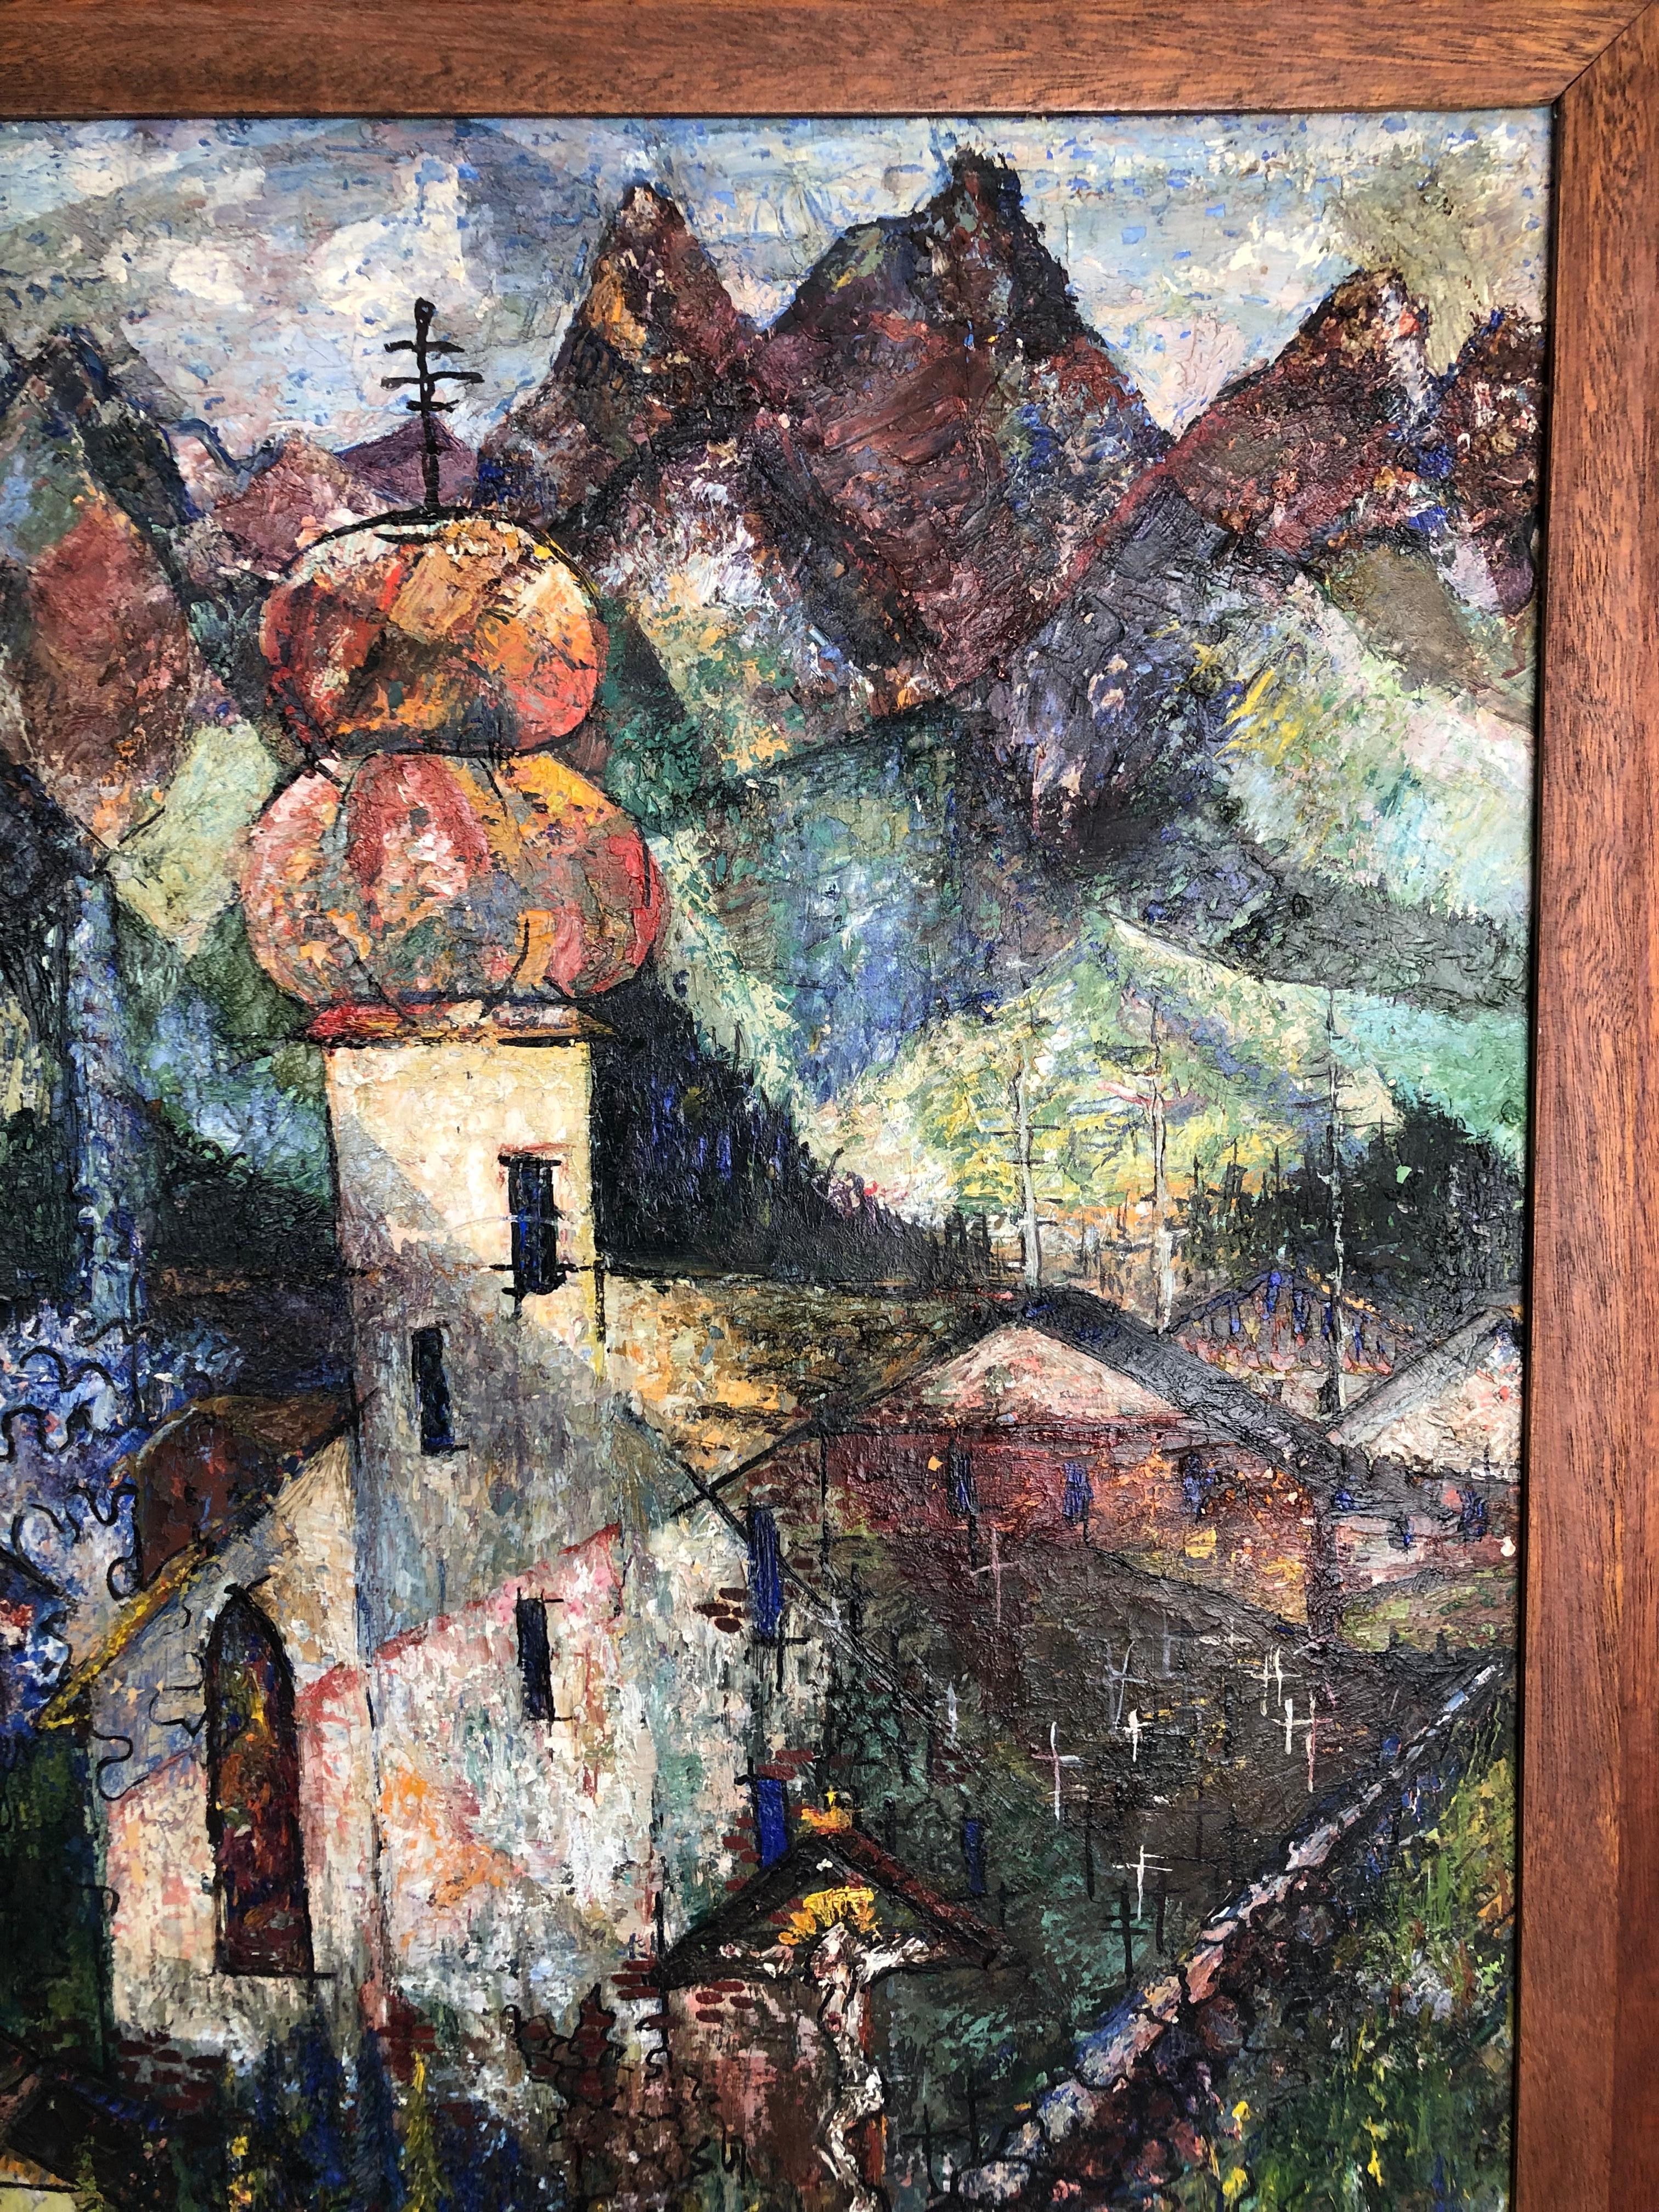 Brownlees Verwendung von Farbe und Pinselstrich, um eine kubistische Komposition zu schaffen, die eine Hommage an Picasso und Braque darstellt, trägt zur strahlenden Energie des Gemäldes bei. Gemalt 1952 zur Vorlage bei der S.F. De Young Museum